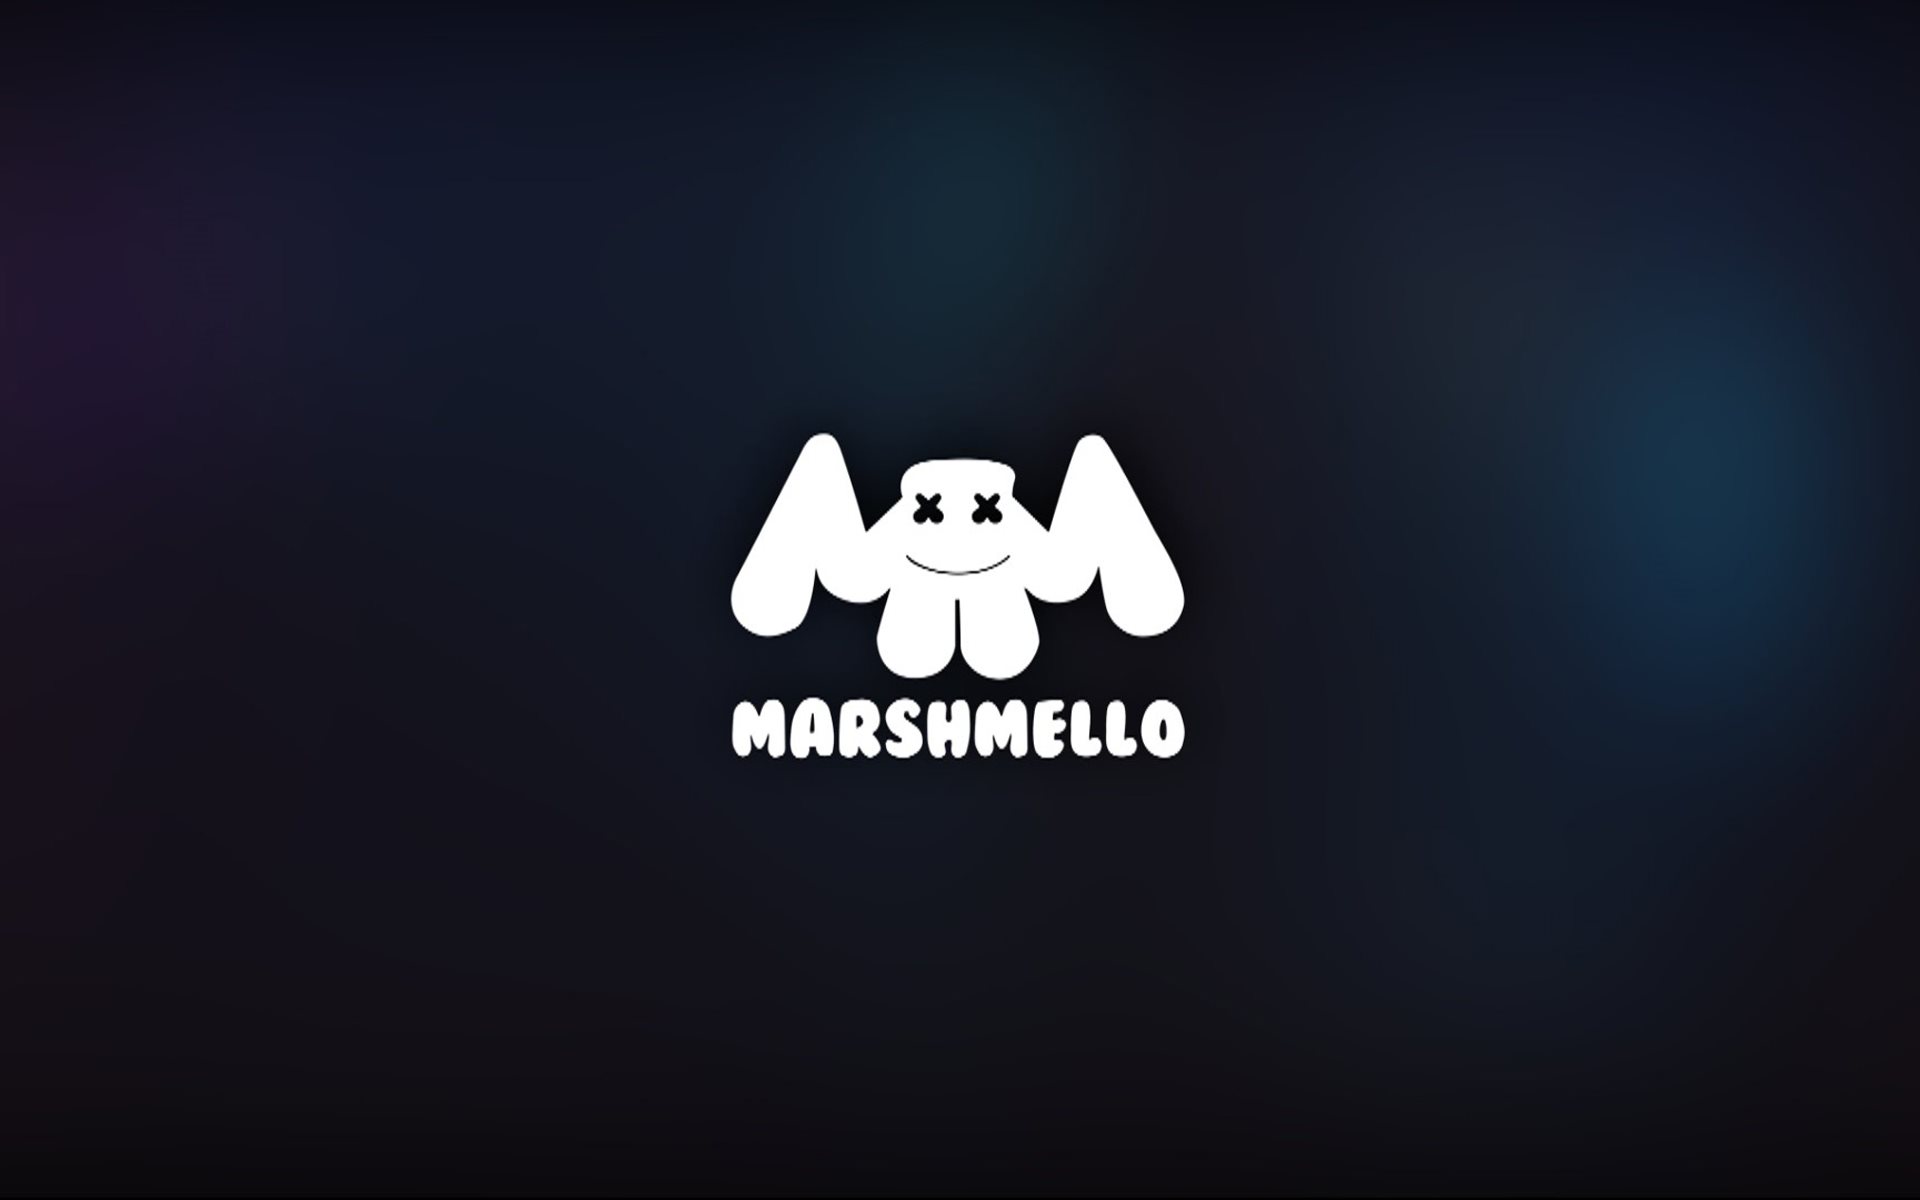 ダウンロード画像 Marshmello 最小限の ロゴ Dj 画面の解像度 19x10 壁紙デスクトップ上